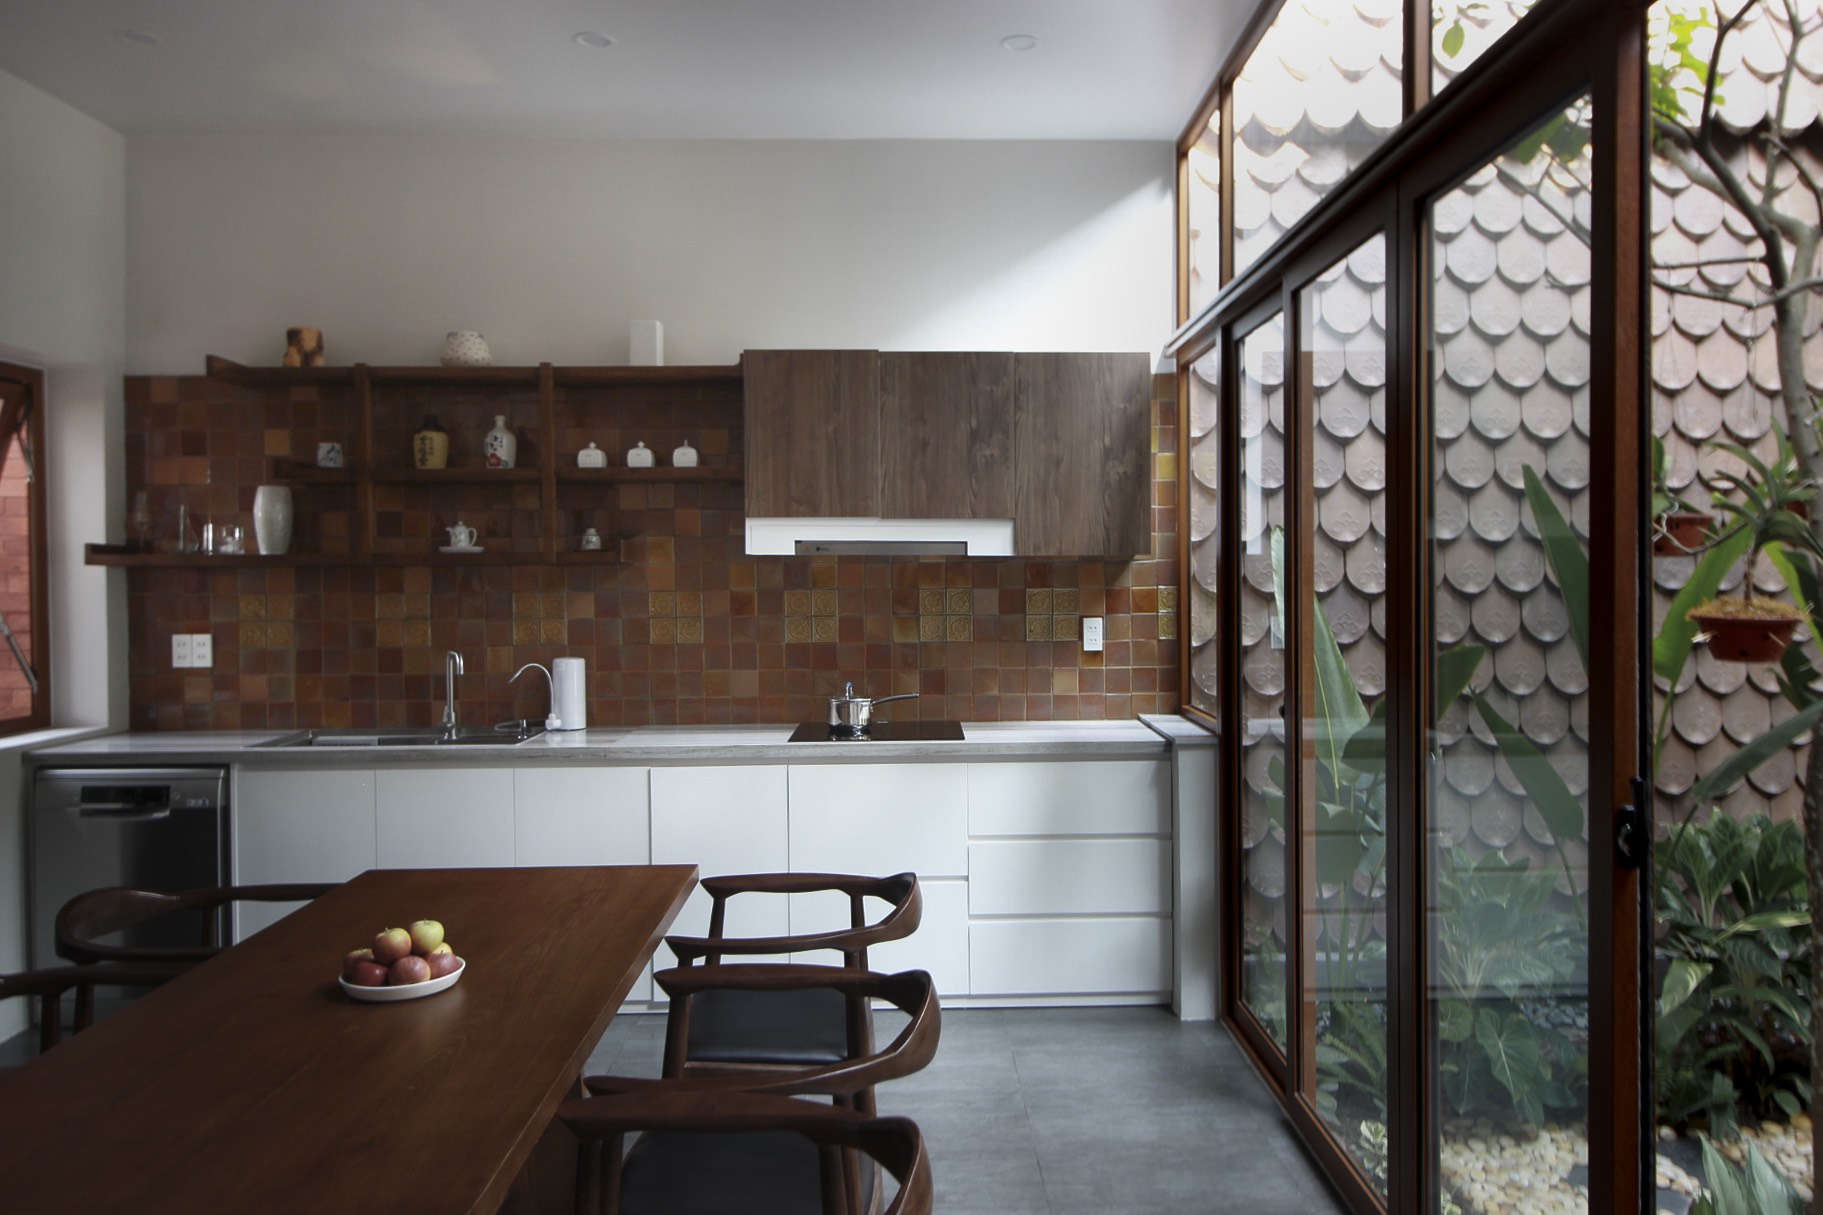 Phòng bếp thiết kế tối giản với gam màu nâu trầm ấm kết hợp với màu trắng tươi sáng của hệ tủ lưu trữ cho cái nhìn tương phản nhẹ nhàng.